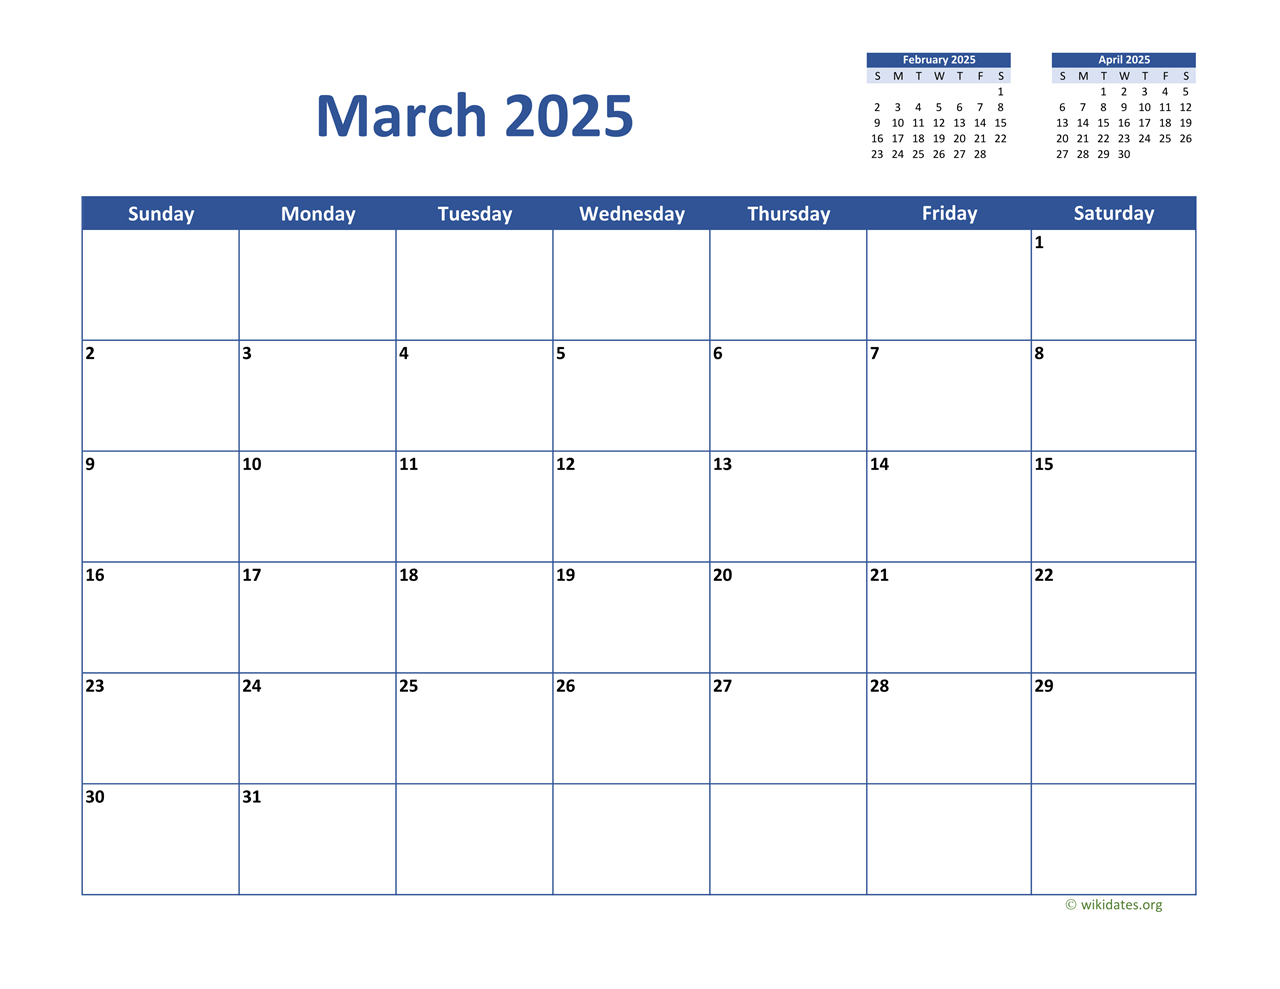 March 2025 Calendar Classic  WikiDates.org